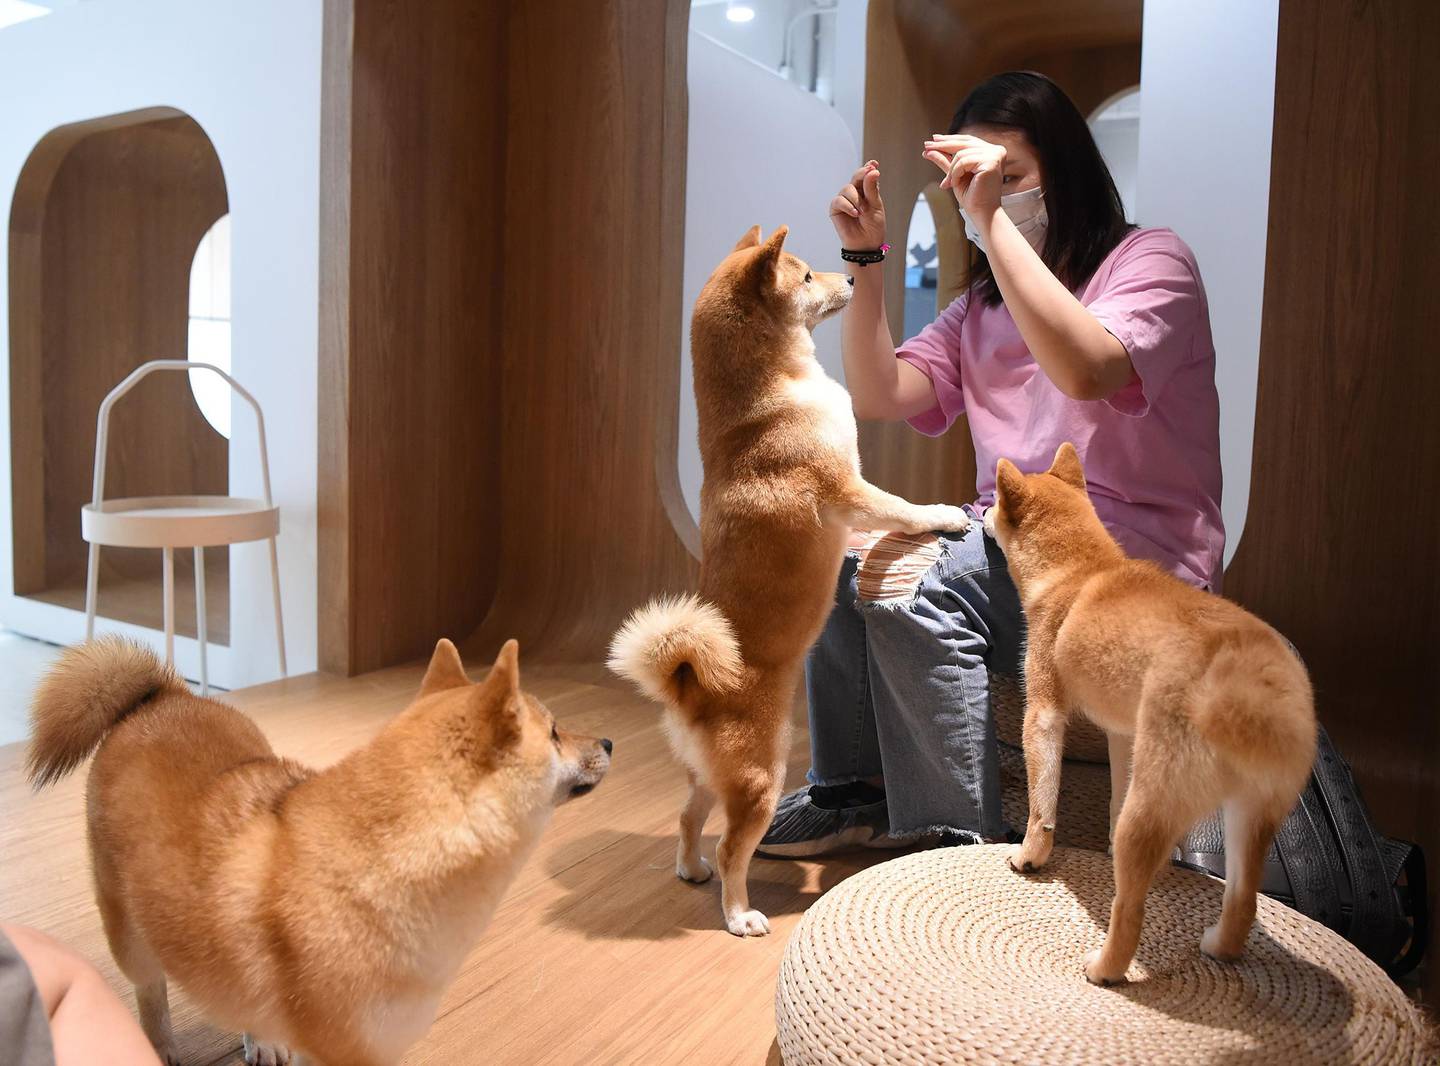 Una persona juega con perros Shiba Inu.